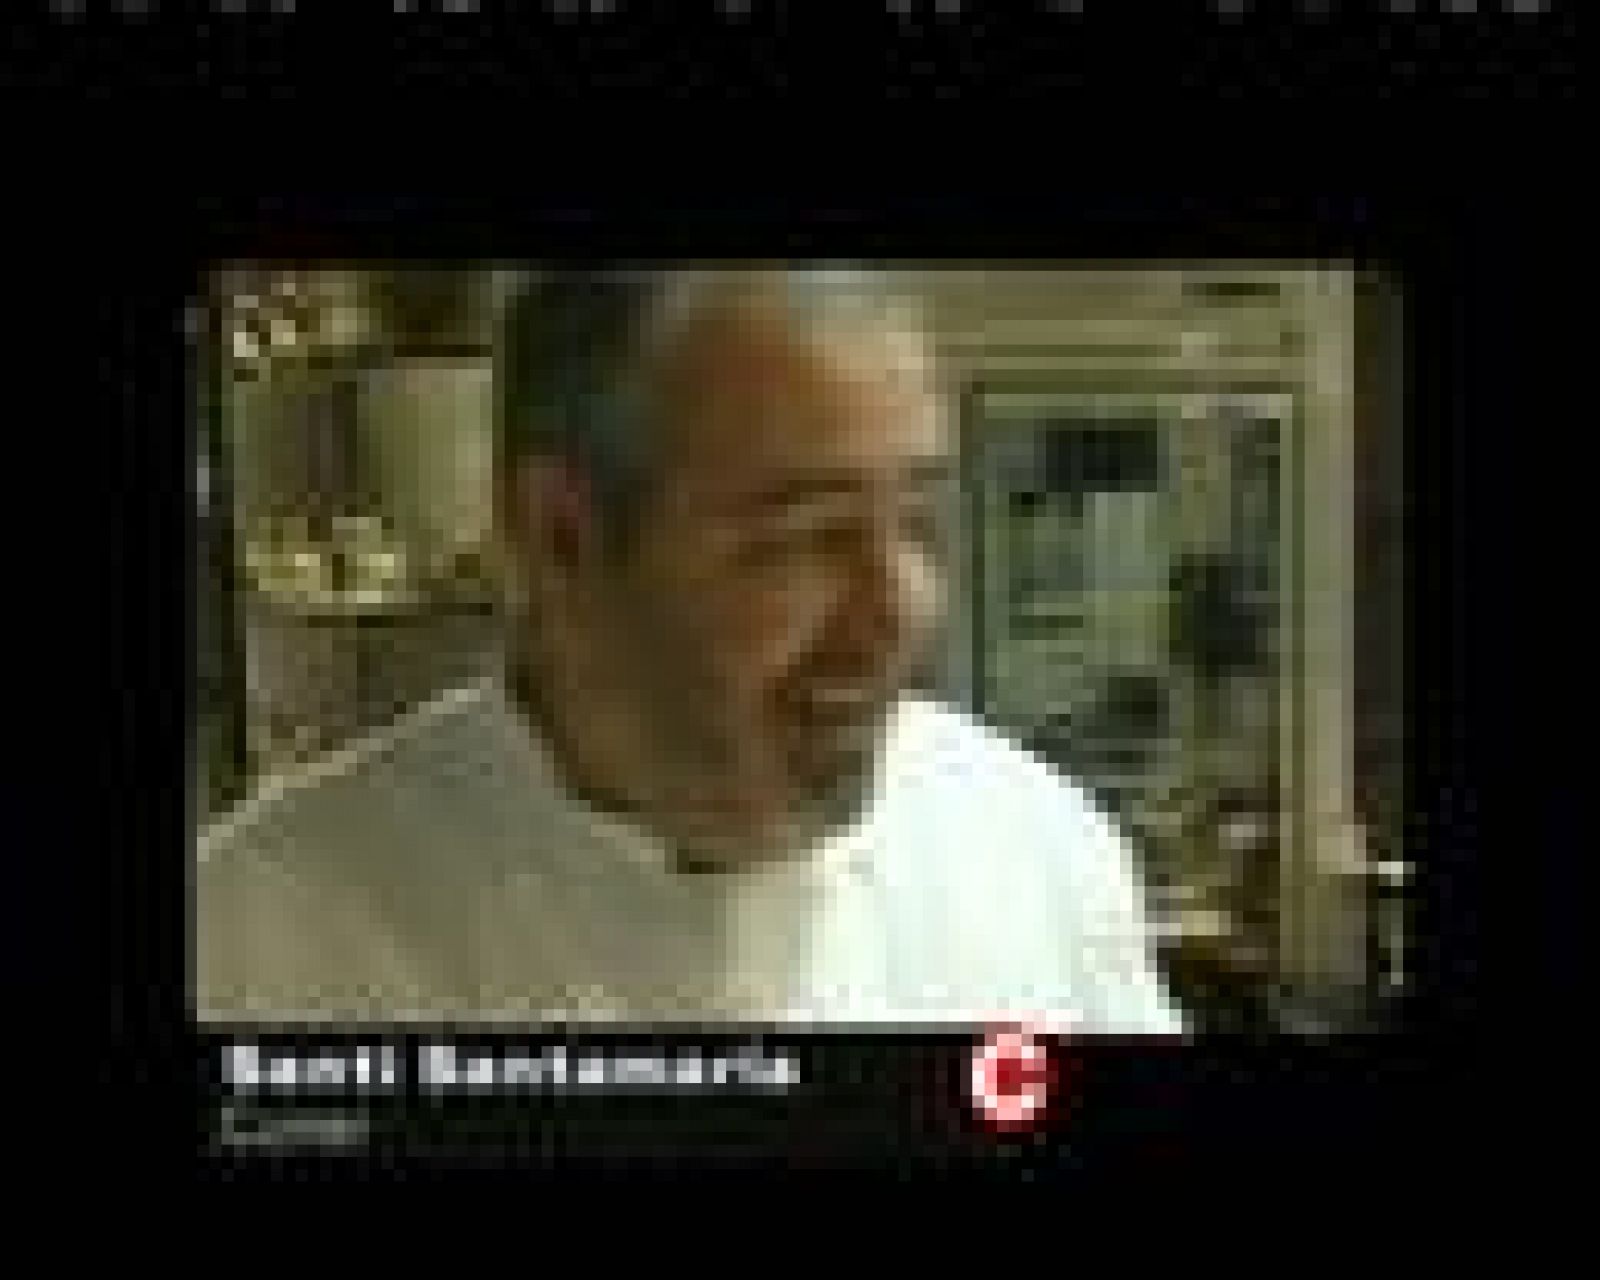  Santi Santamaria explica qué és per ell la cuina, des d'El Racó de Can Fabes 